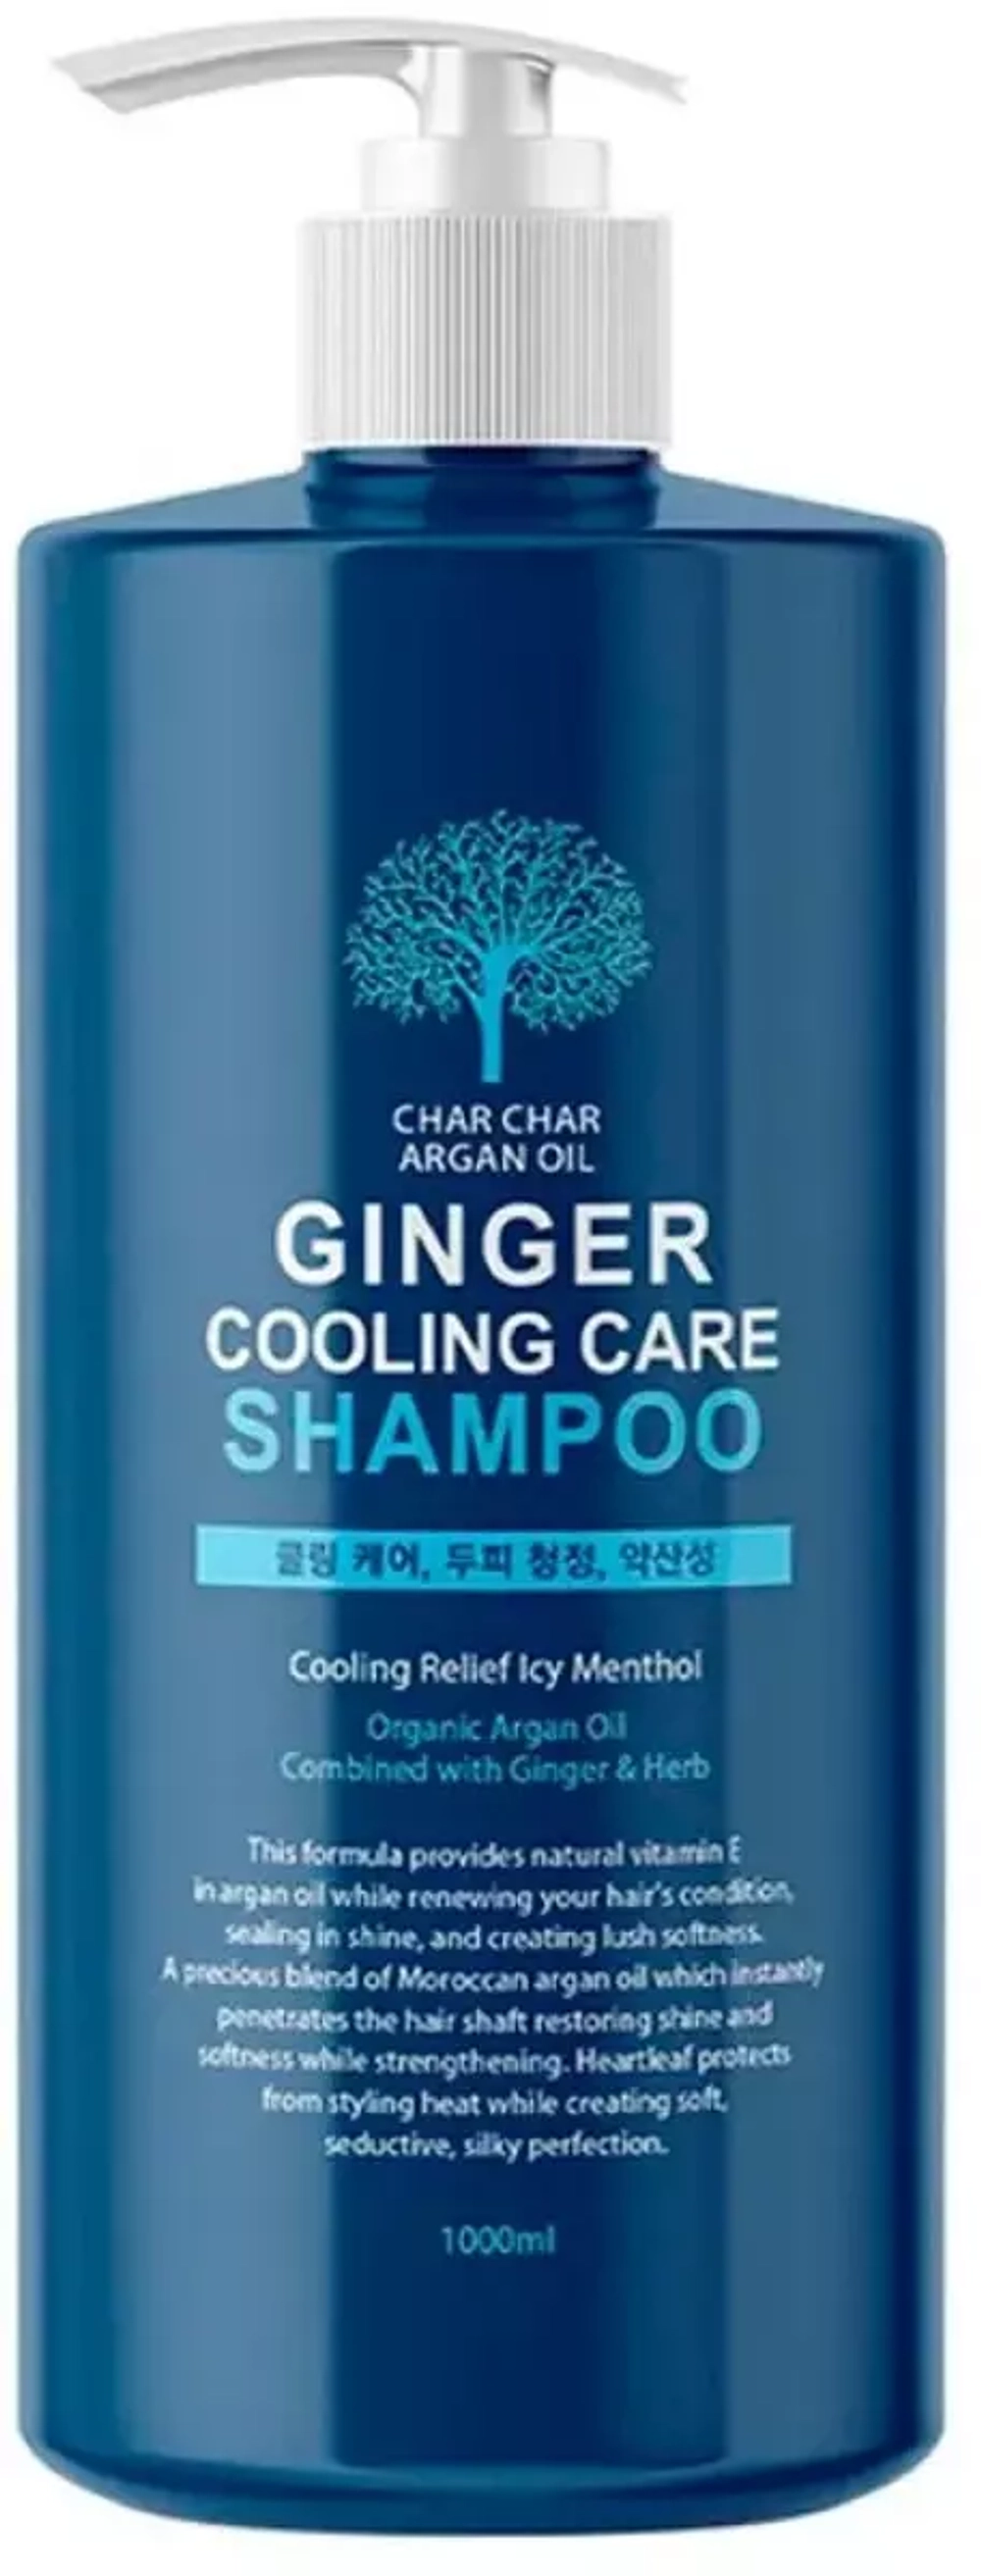 Укрепляющий шампунь с аргановым маслом и охлаждающим эффектом - Char Char Argan Oil Ginger Cooling Care Shampoo, 1000 мл